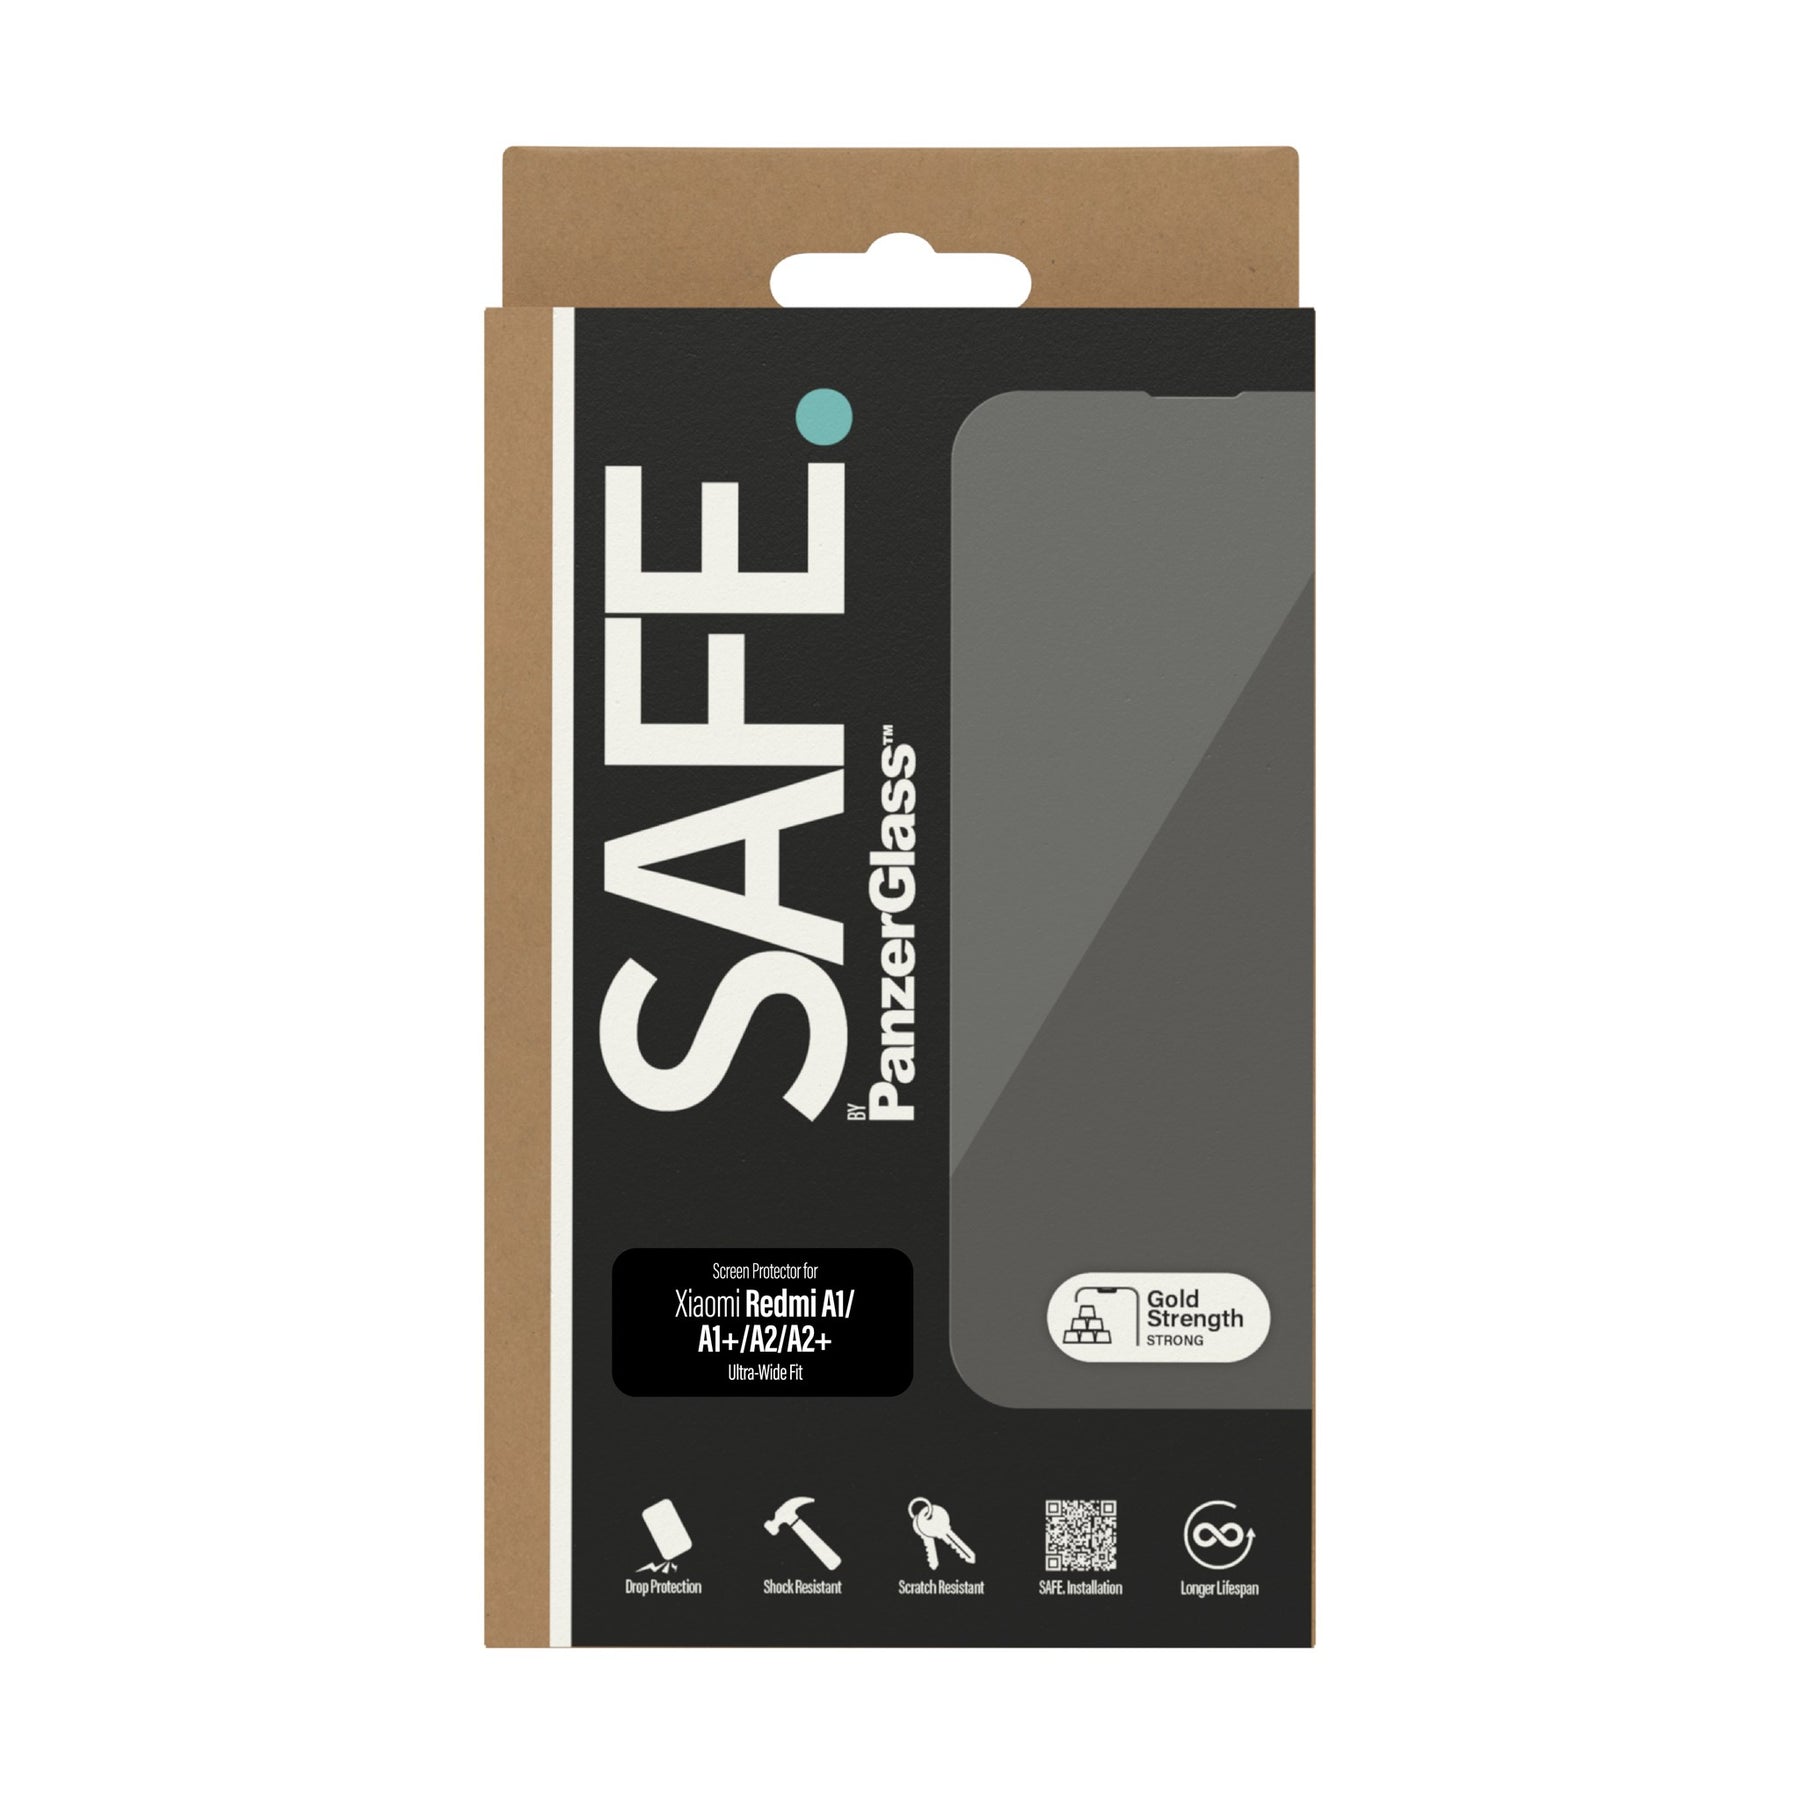 SAFE. by PanzerGlass® Screen Protector Xiaomi Redmi A1 | A1+ | A2 | A2+ | Ultra-Wide Fit 3